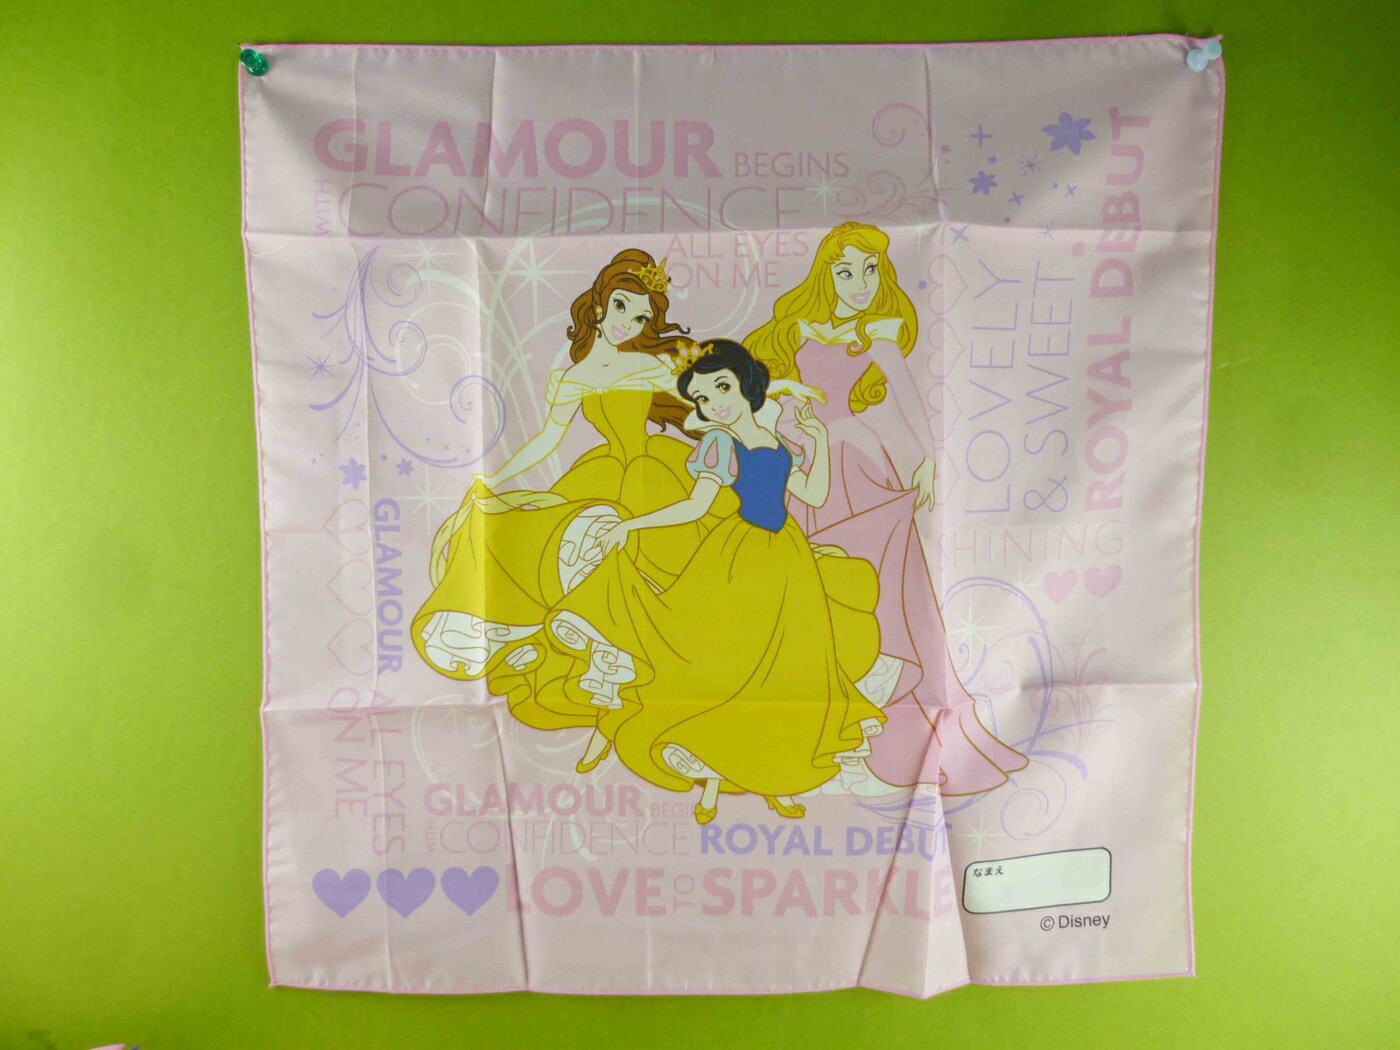 【震撼精品百貨】Disney 迪士尼公主系列 手帕-綜合公主-英文字 震撼日式精品百貨